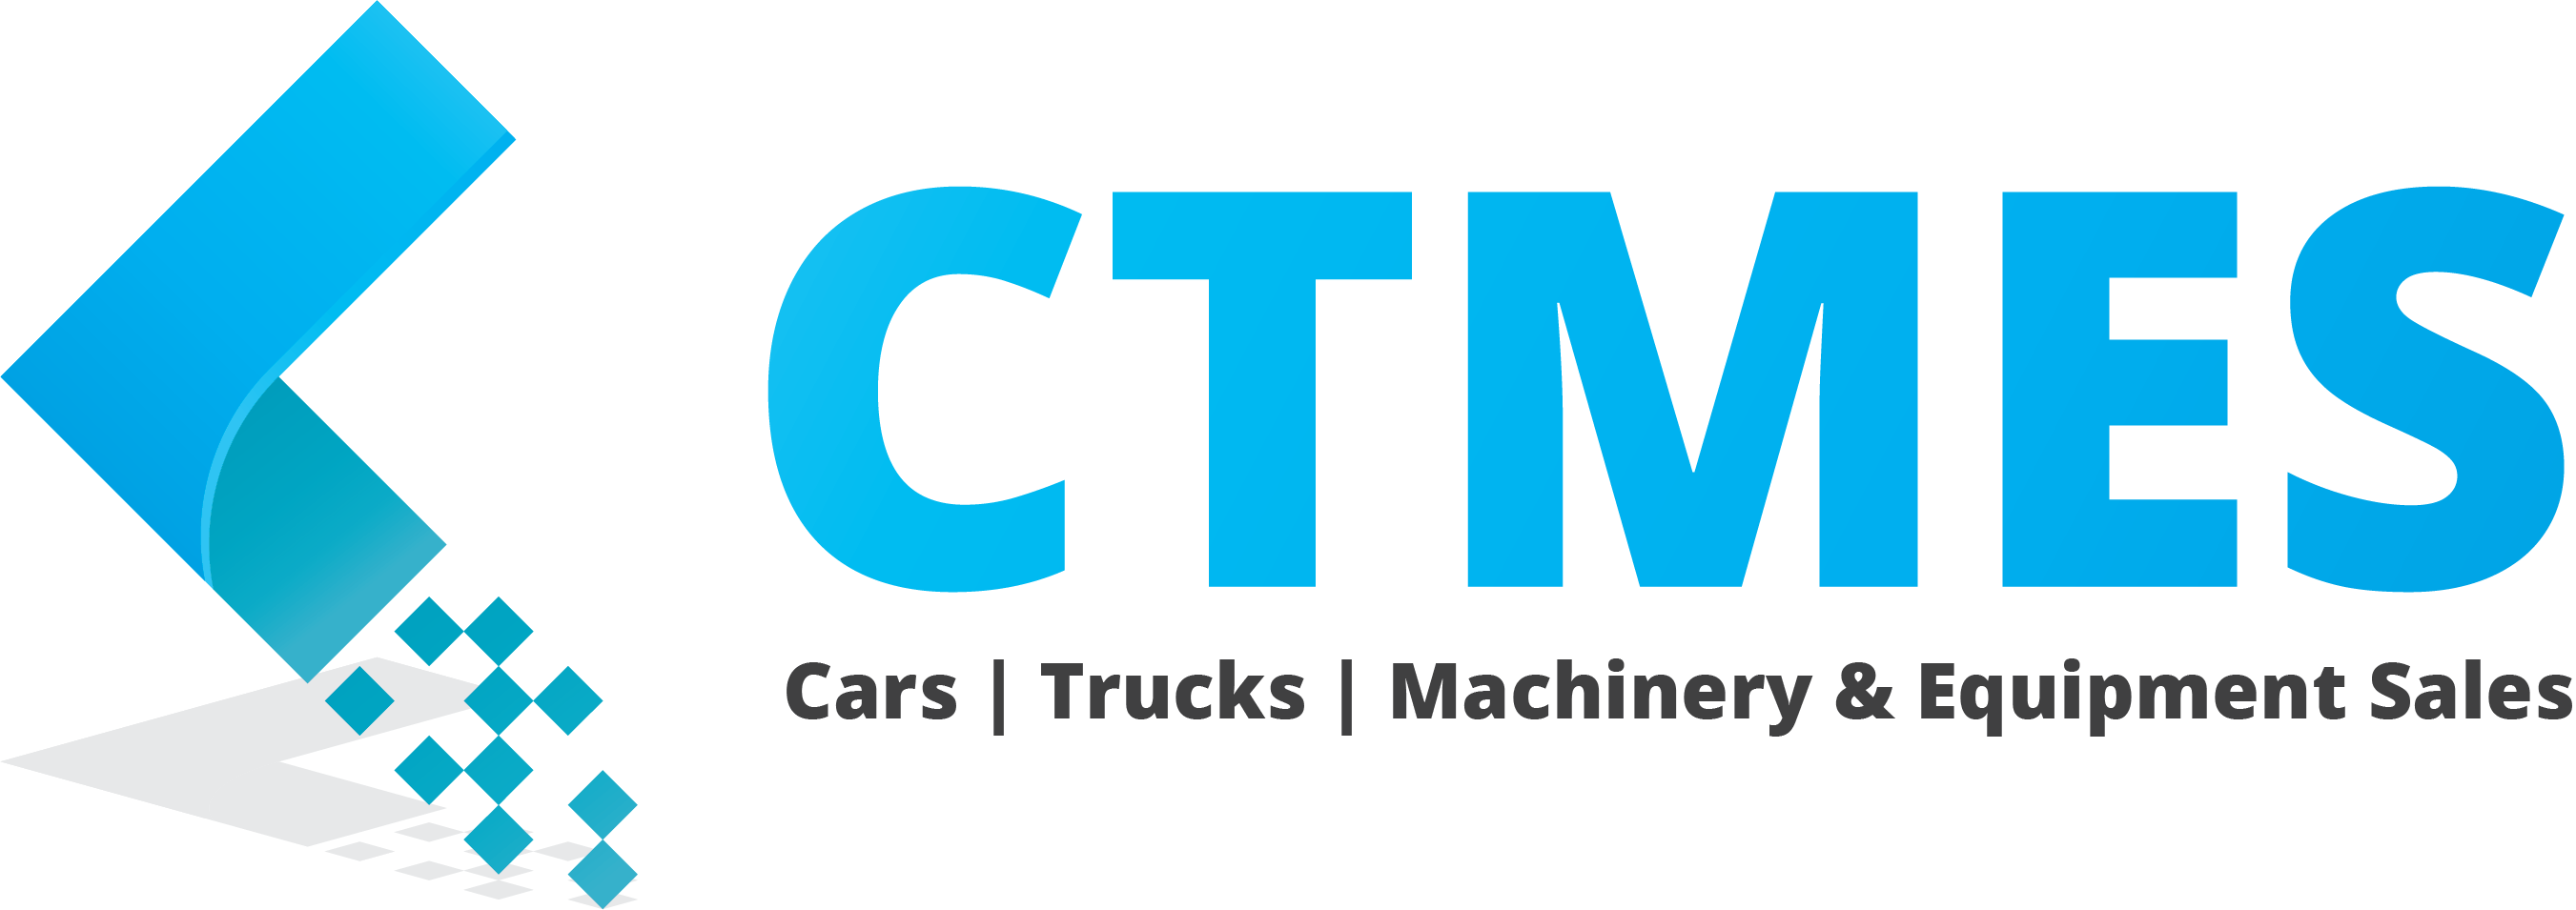 Cars | Trucks | Machinery & Equipment Sales